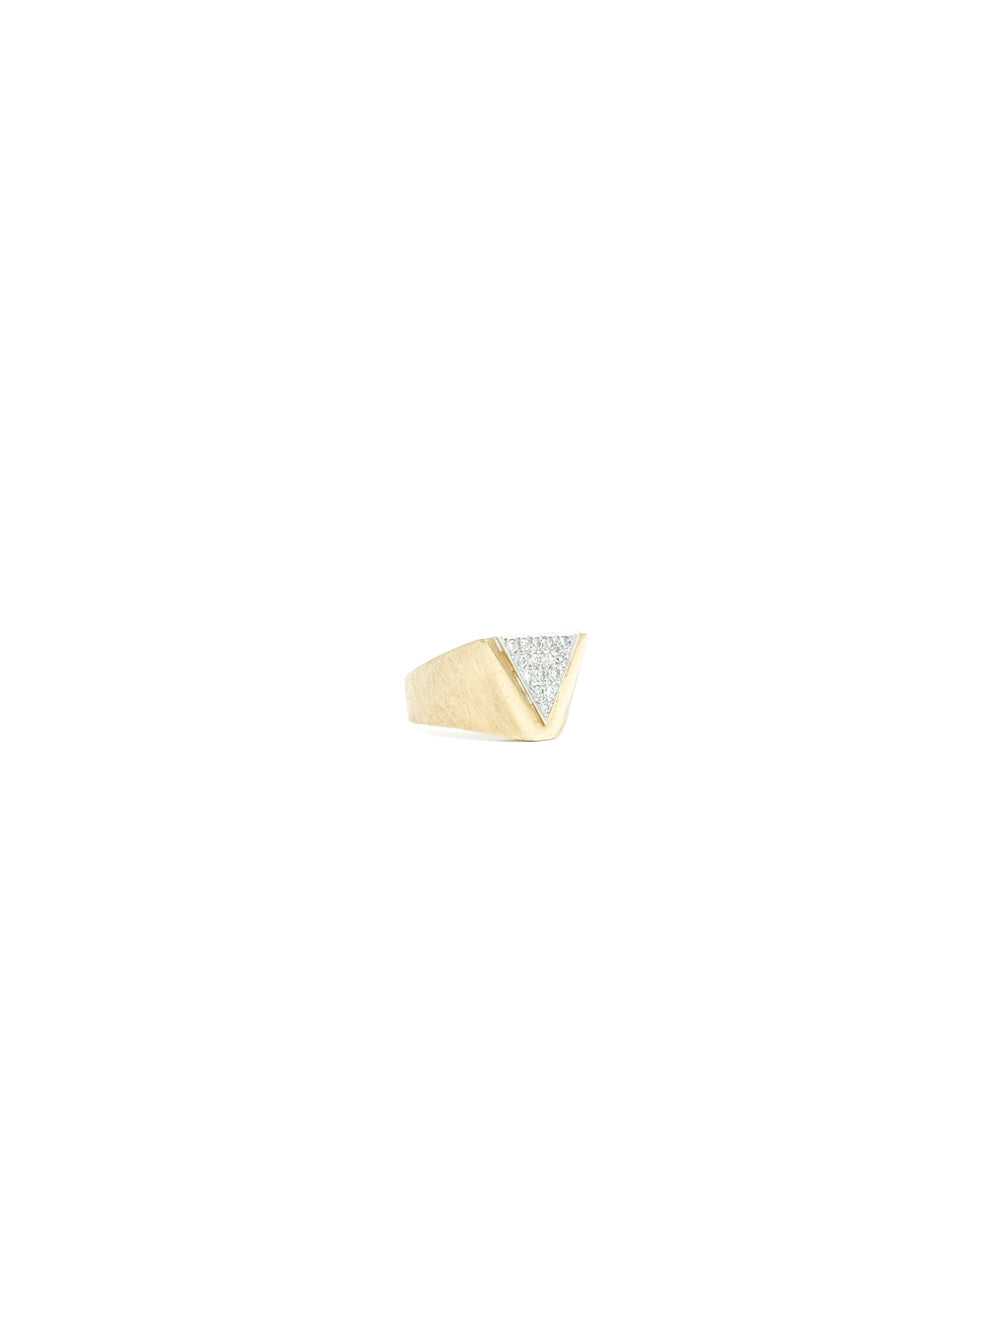 14K Diamond Geometric Ring - image 4